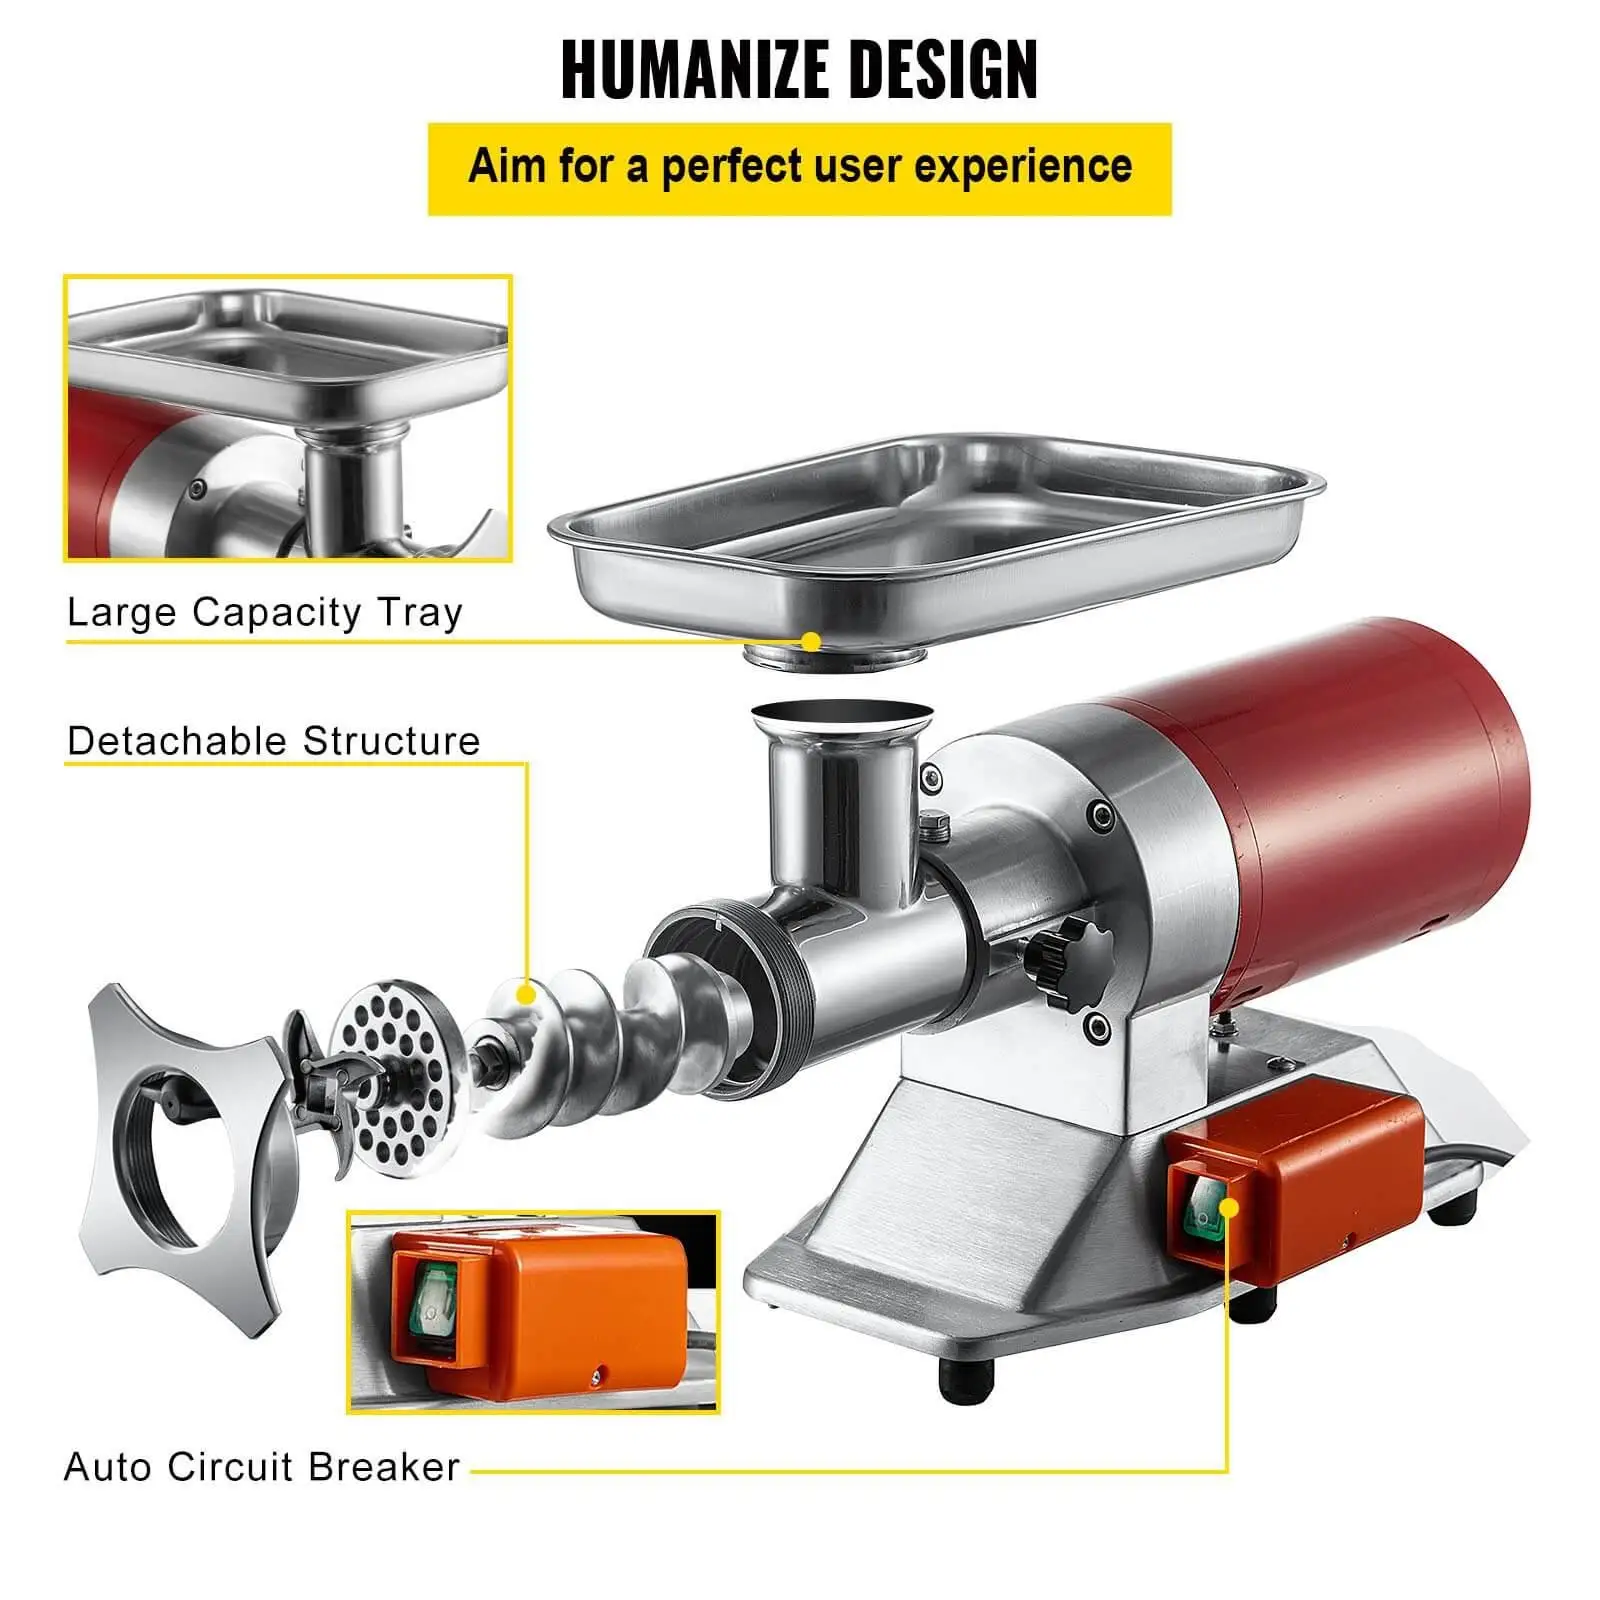 VEVOR's Humanized-design meat grinder